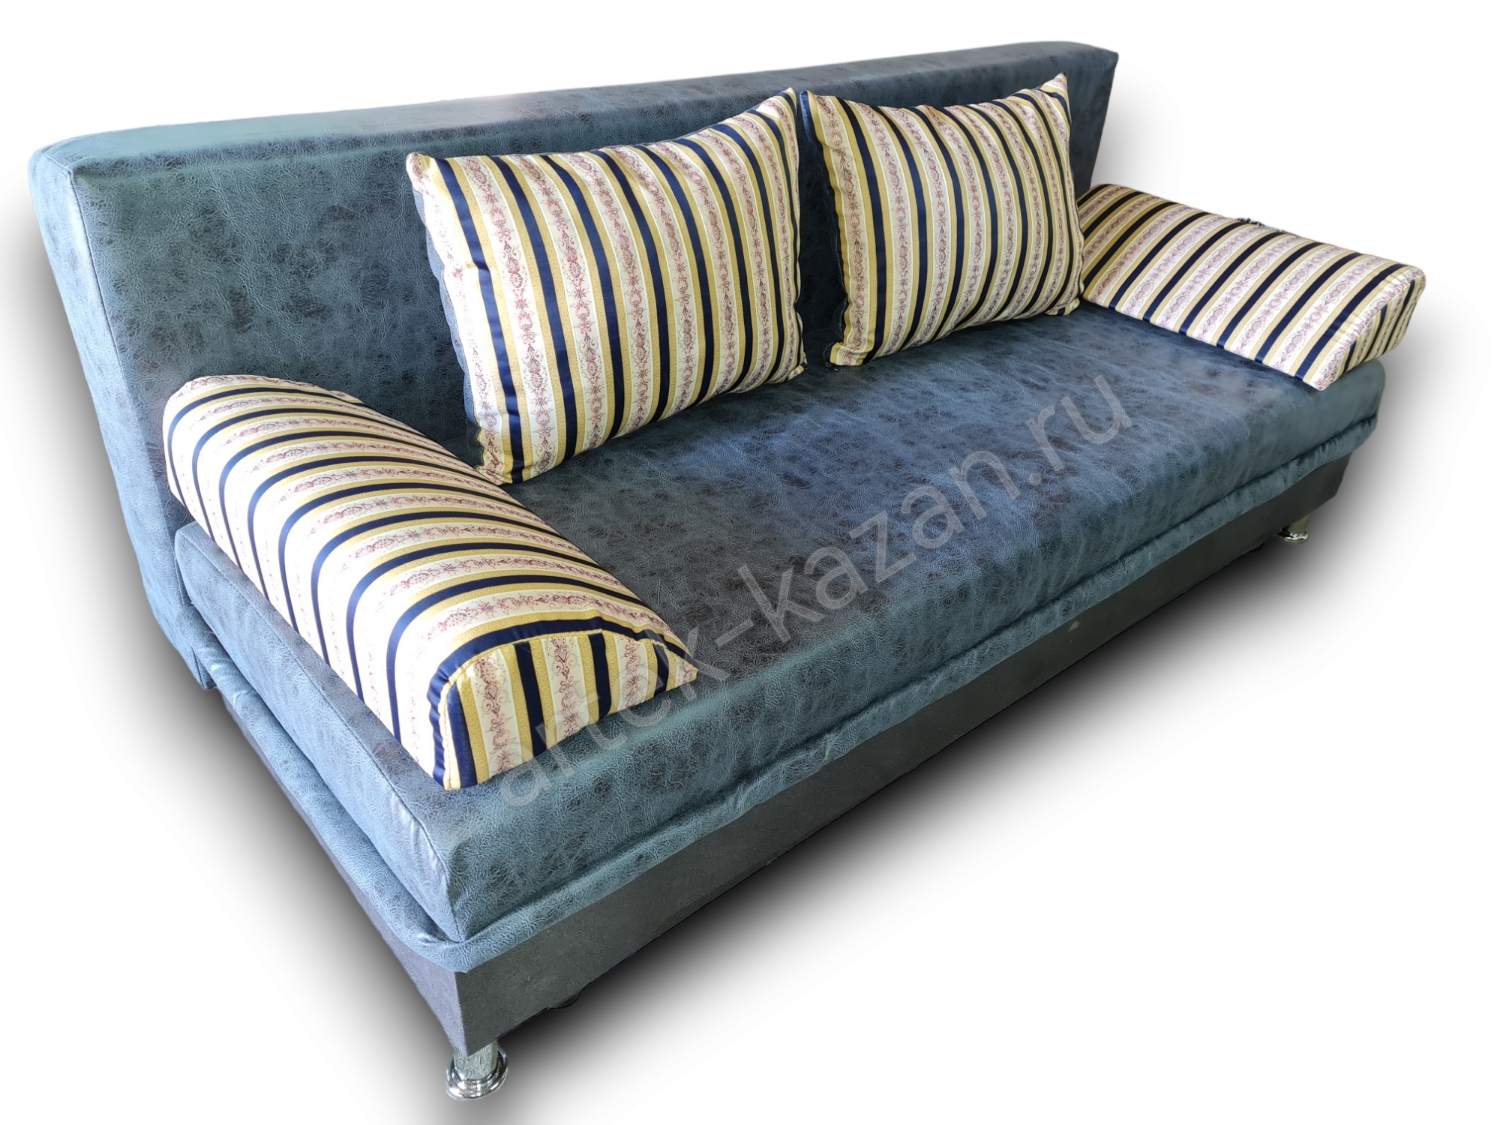 диван еврокнижка Эконом фото № 157. Купить недорогой диван по низкой цене от производителя можно у нас.